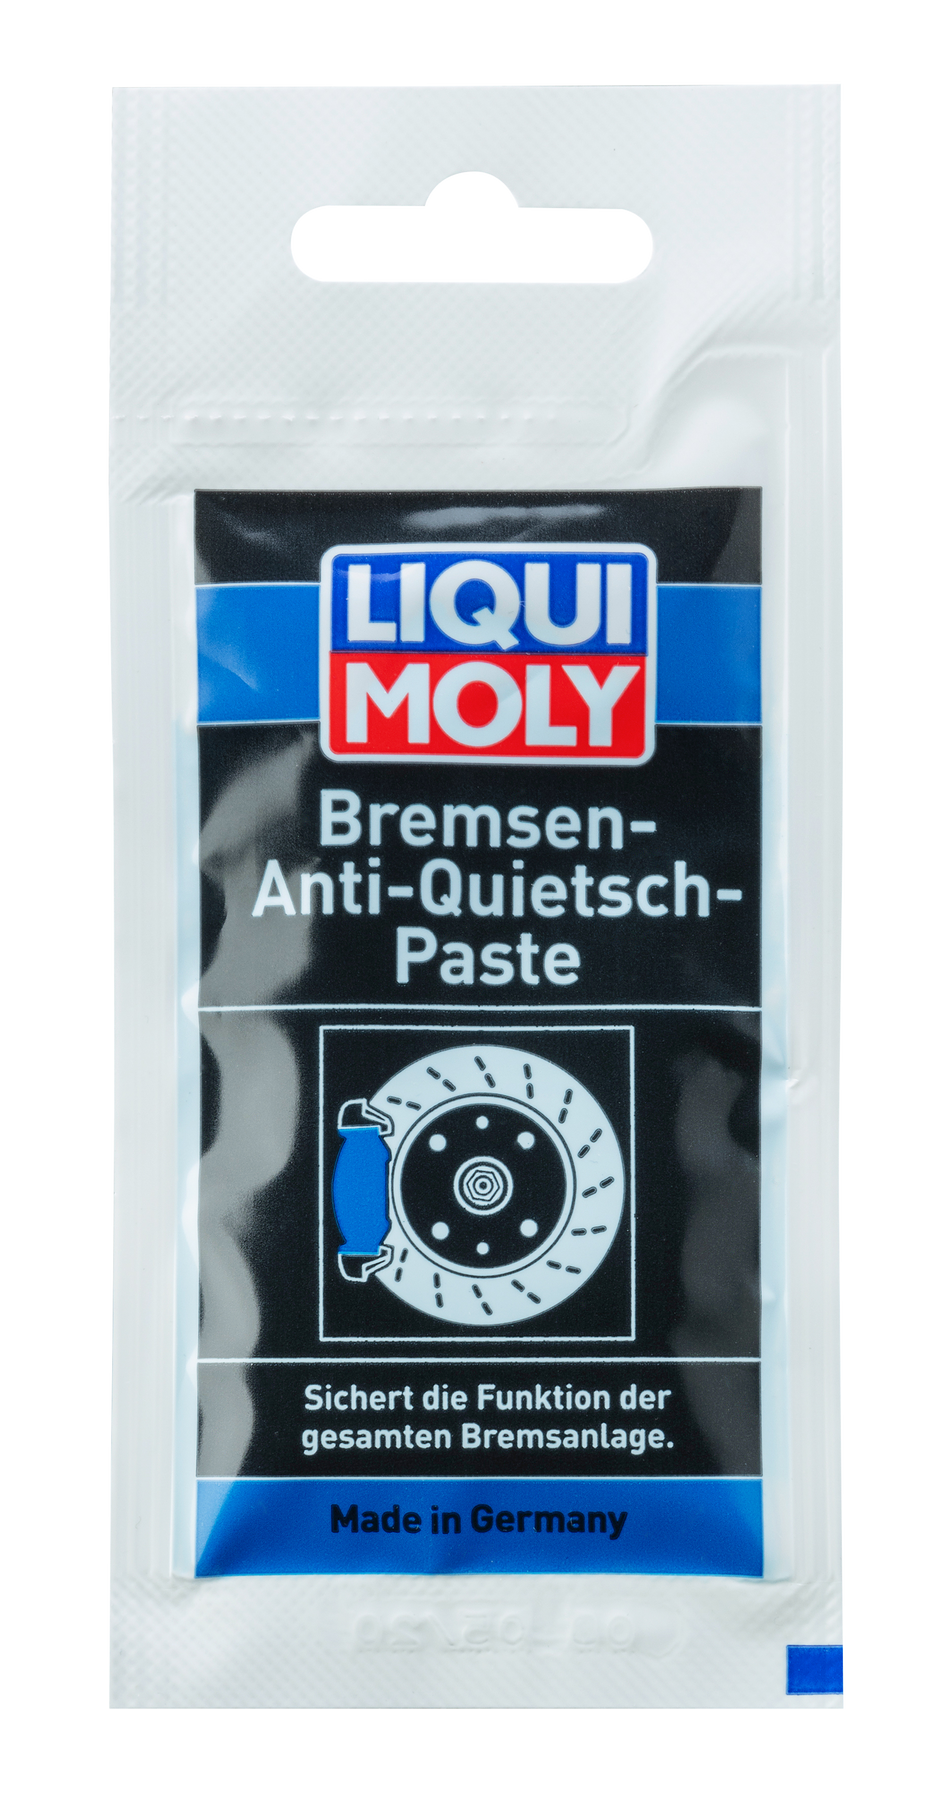 Liqui Moly Bremsen-Anti-Quietsch-Paste - для тормозов, 0.01кг - LIQUI MOLY, Официальный интернет-магазин